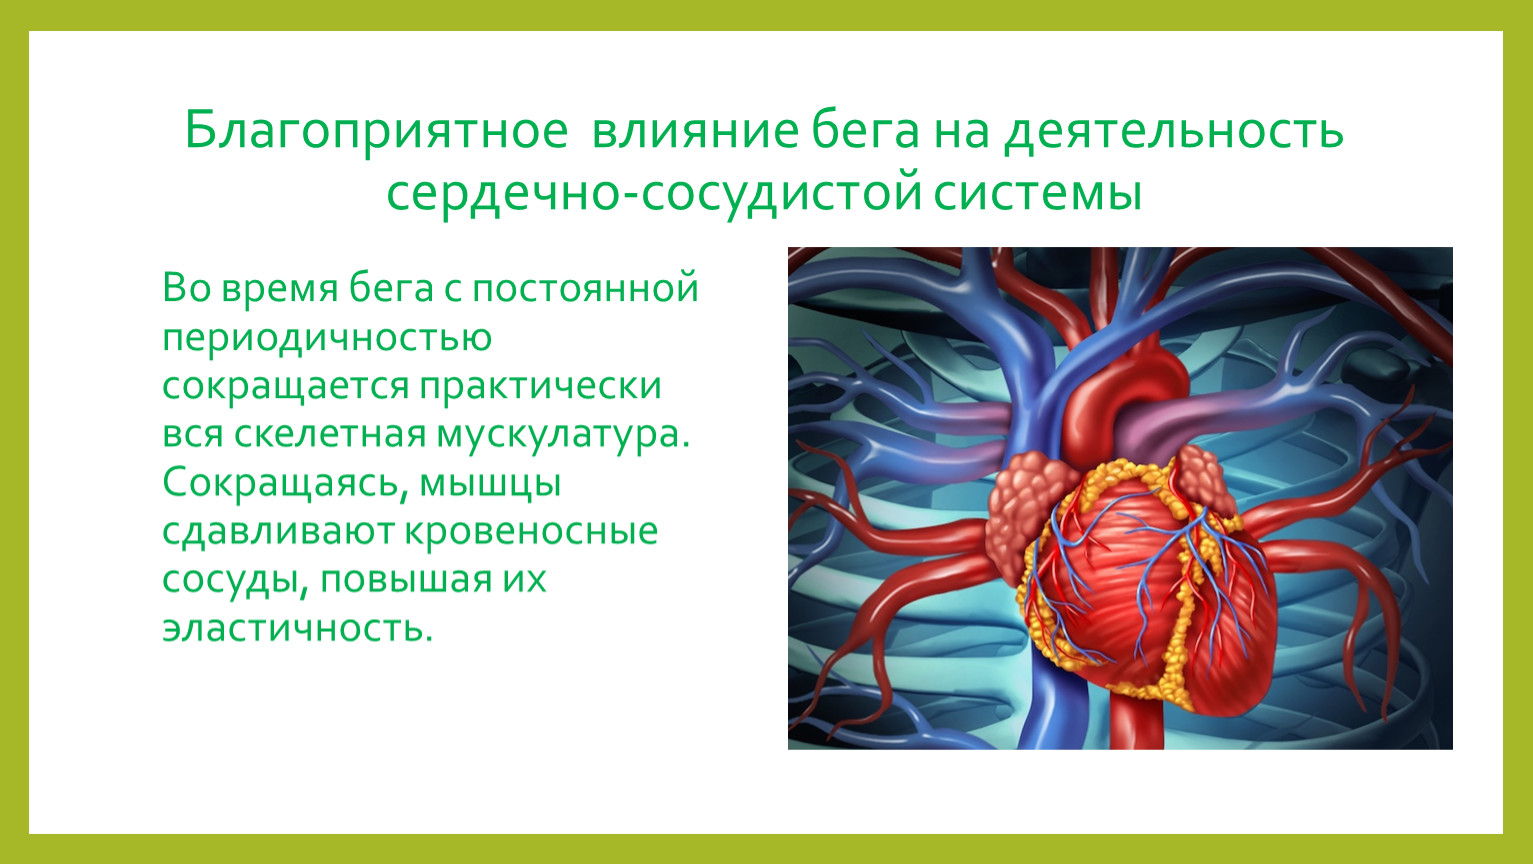 Роль кровообращения в организме. Влияние на сердечно-сосудистую систему. Влияние бега на сердечно-сосудистую систему. Благоприятное влияние на сердечно-сосудистую систему. Влияние на кровеносную систему.